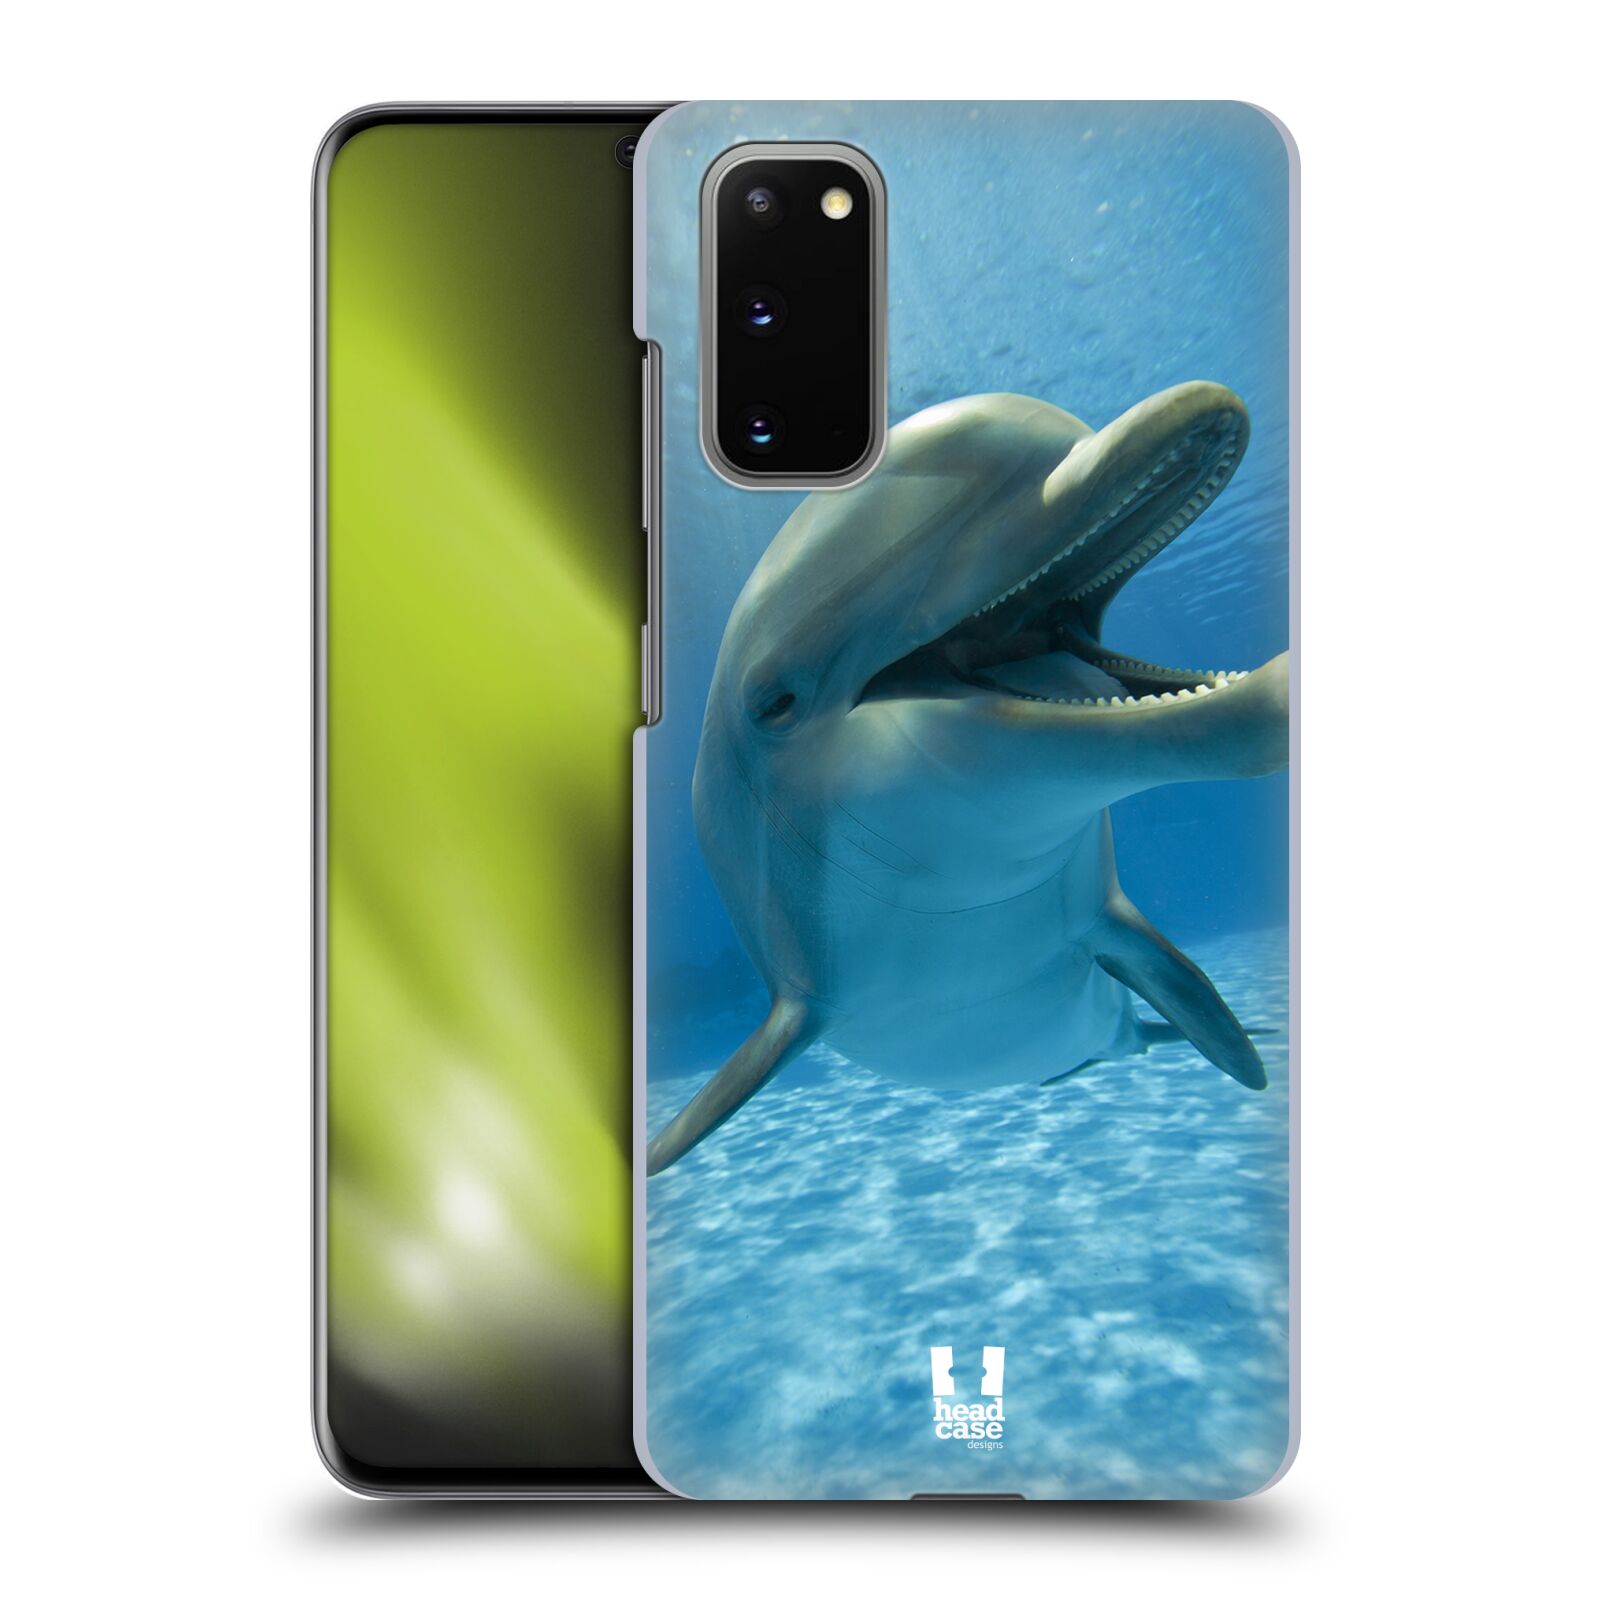 Zadní obal pro mobil Samsung Galaxy S20 / S20 5G - HEAD CASE - Svět zvířat delfín v moři